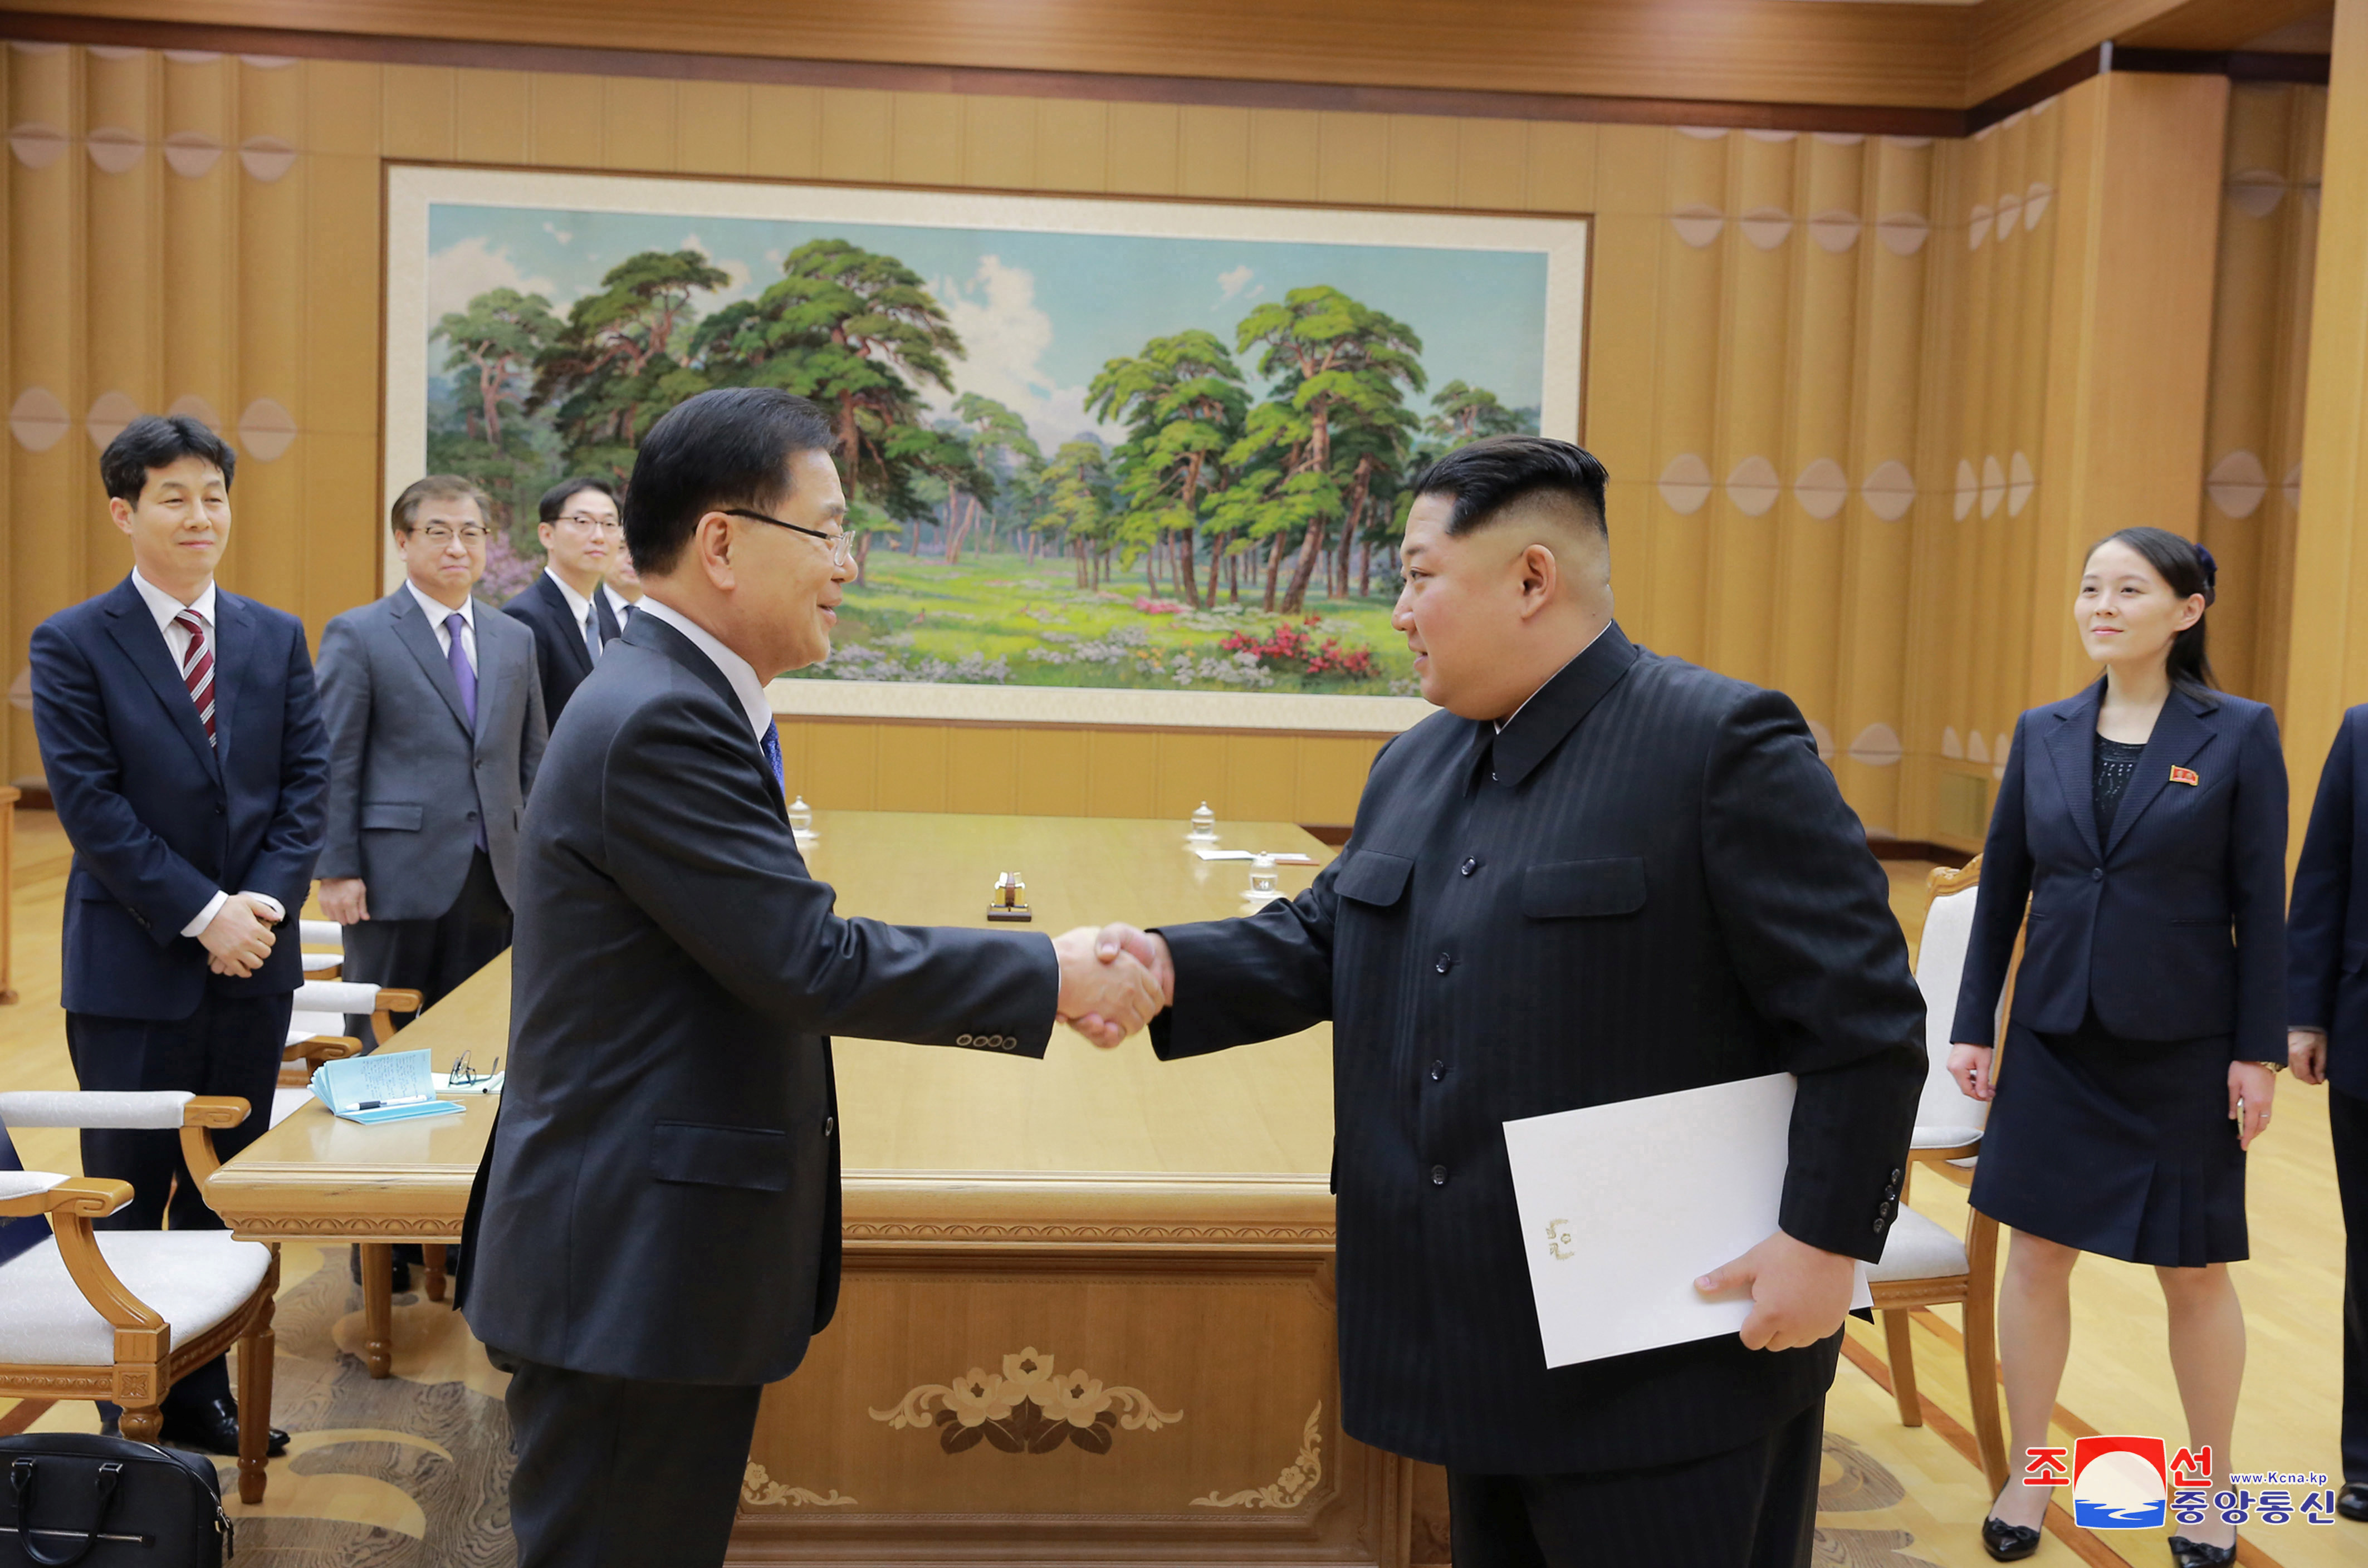 زعيم كوريا الشمالية مع أحد أعضاء وفد كوريا الجنوبية